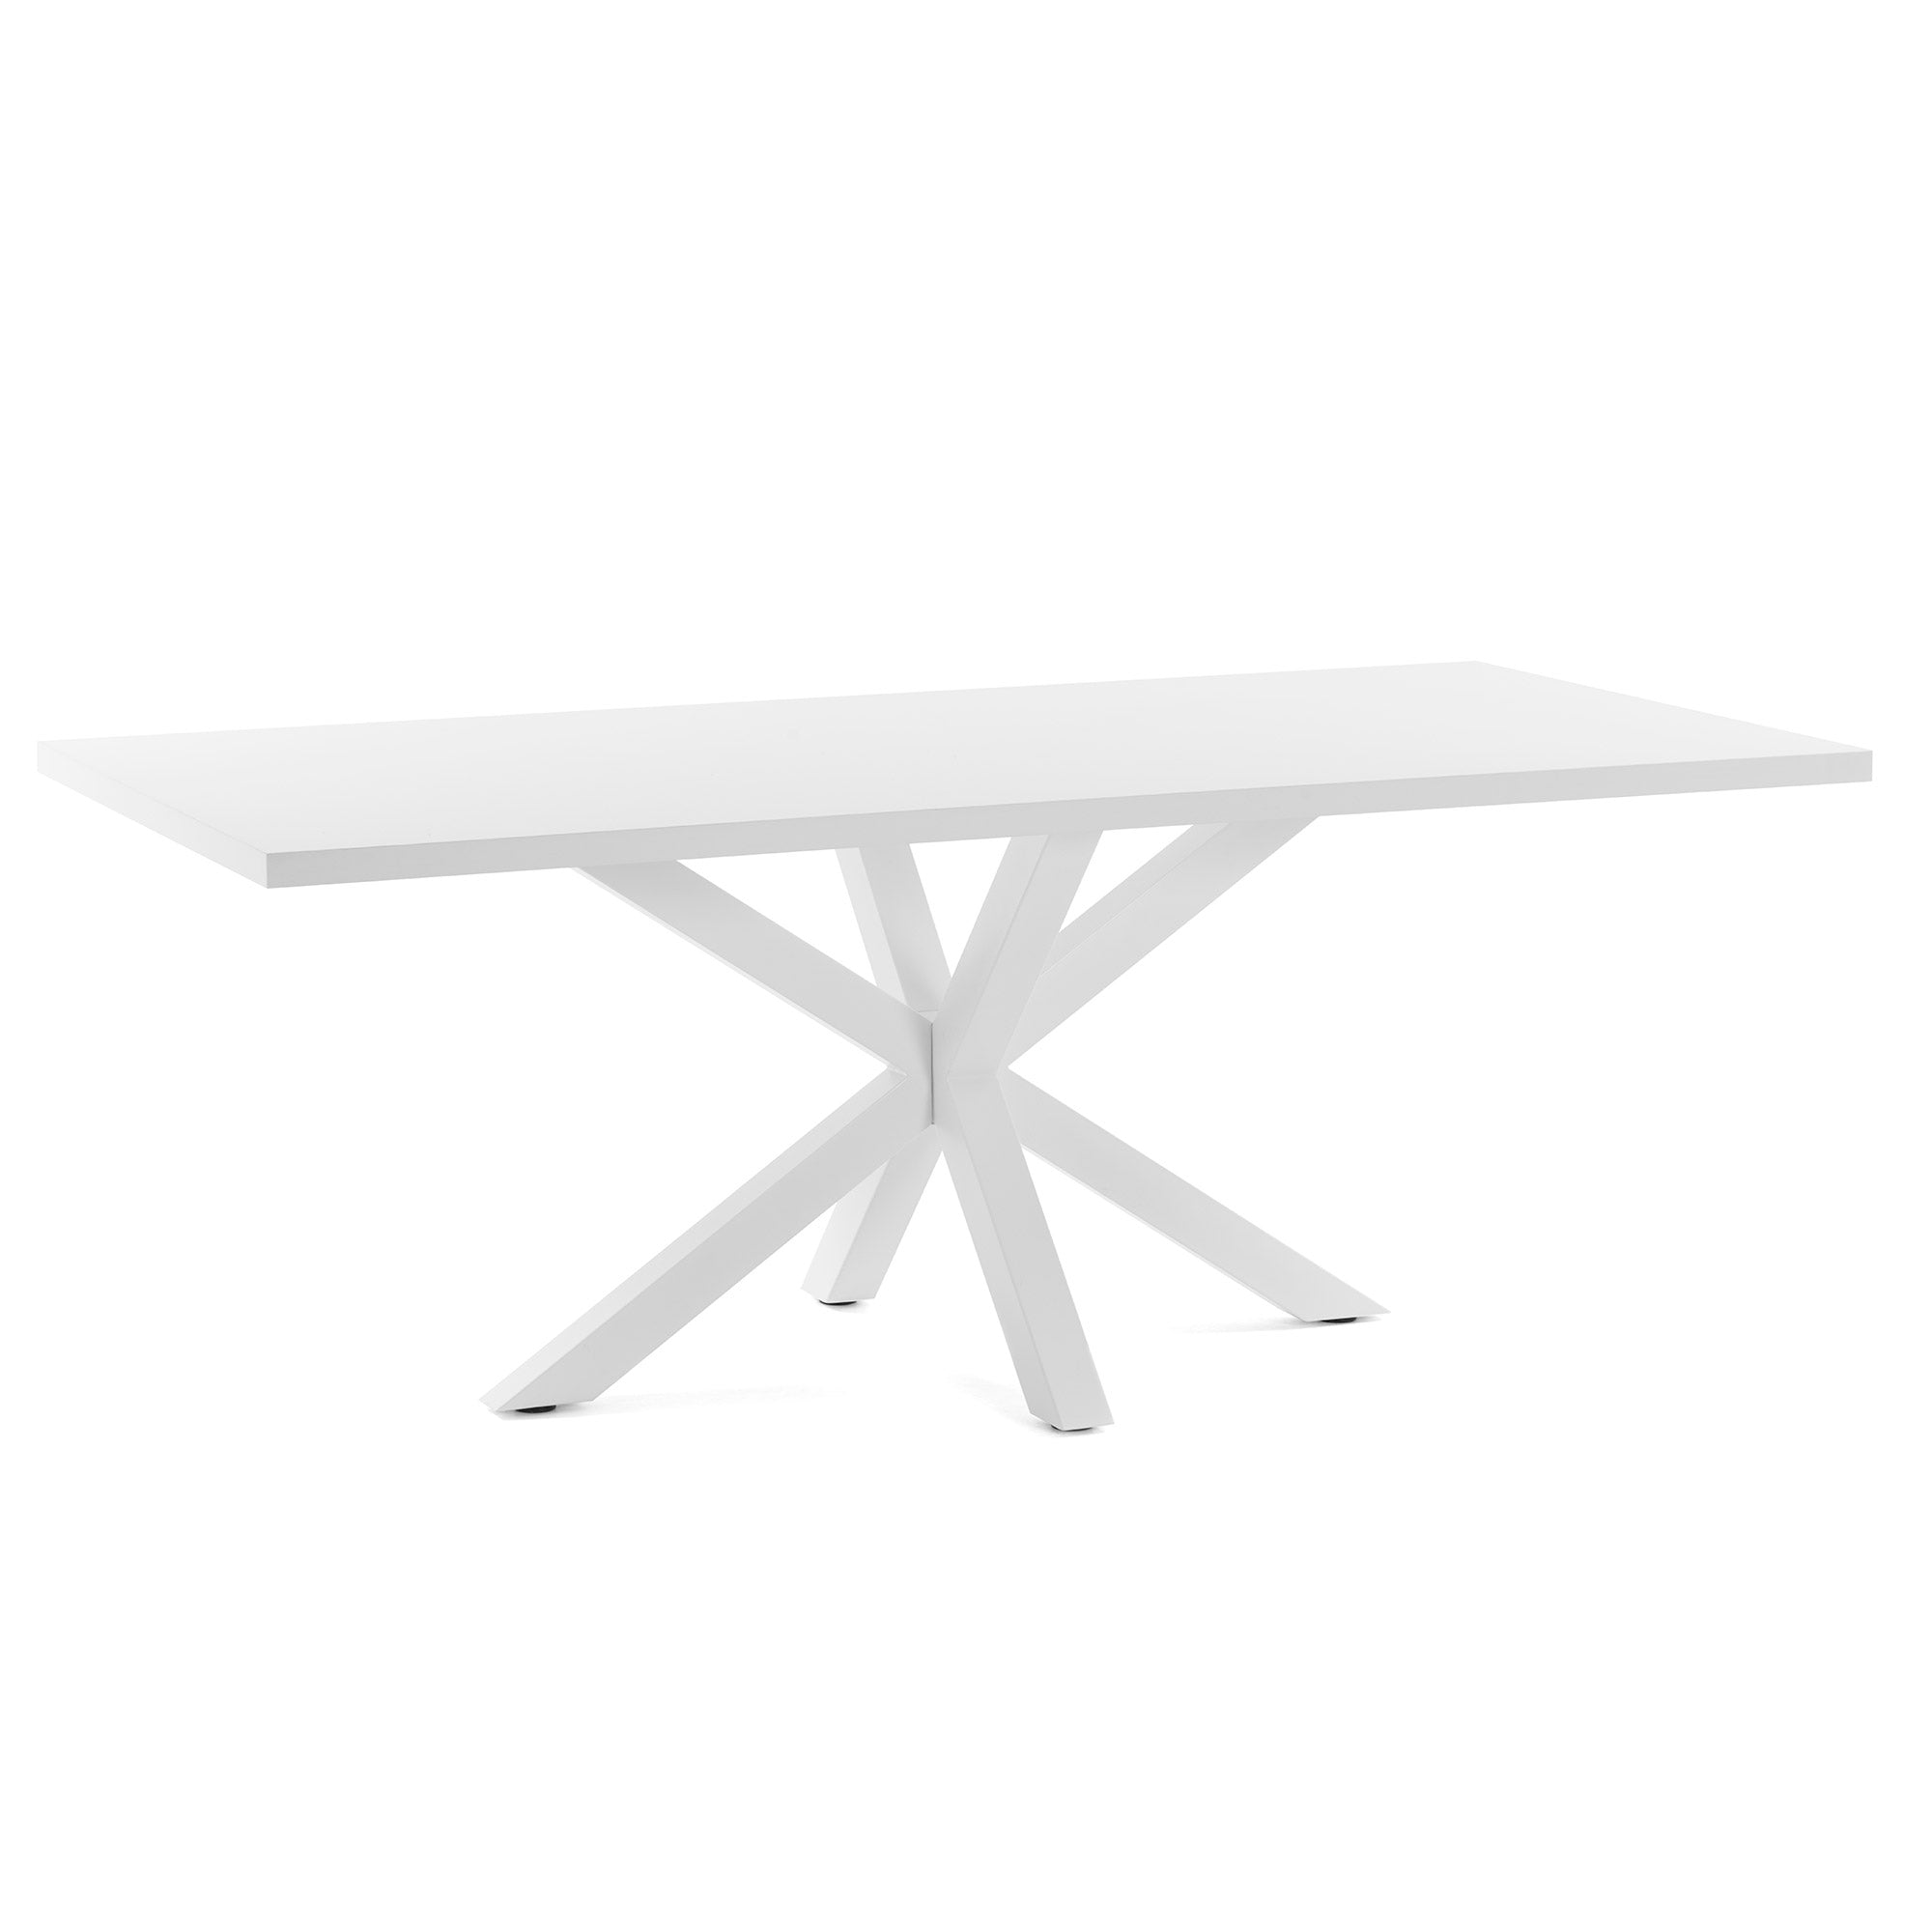 Argo table 160 cm white melamine white legs